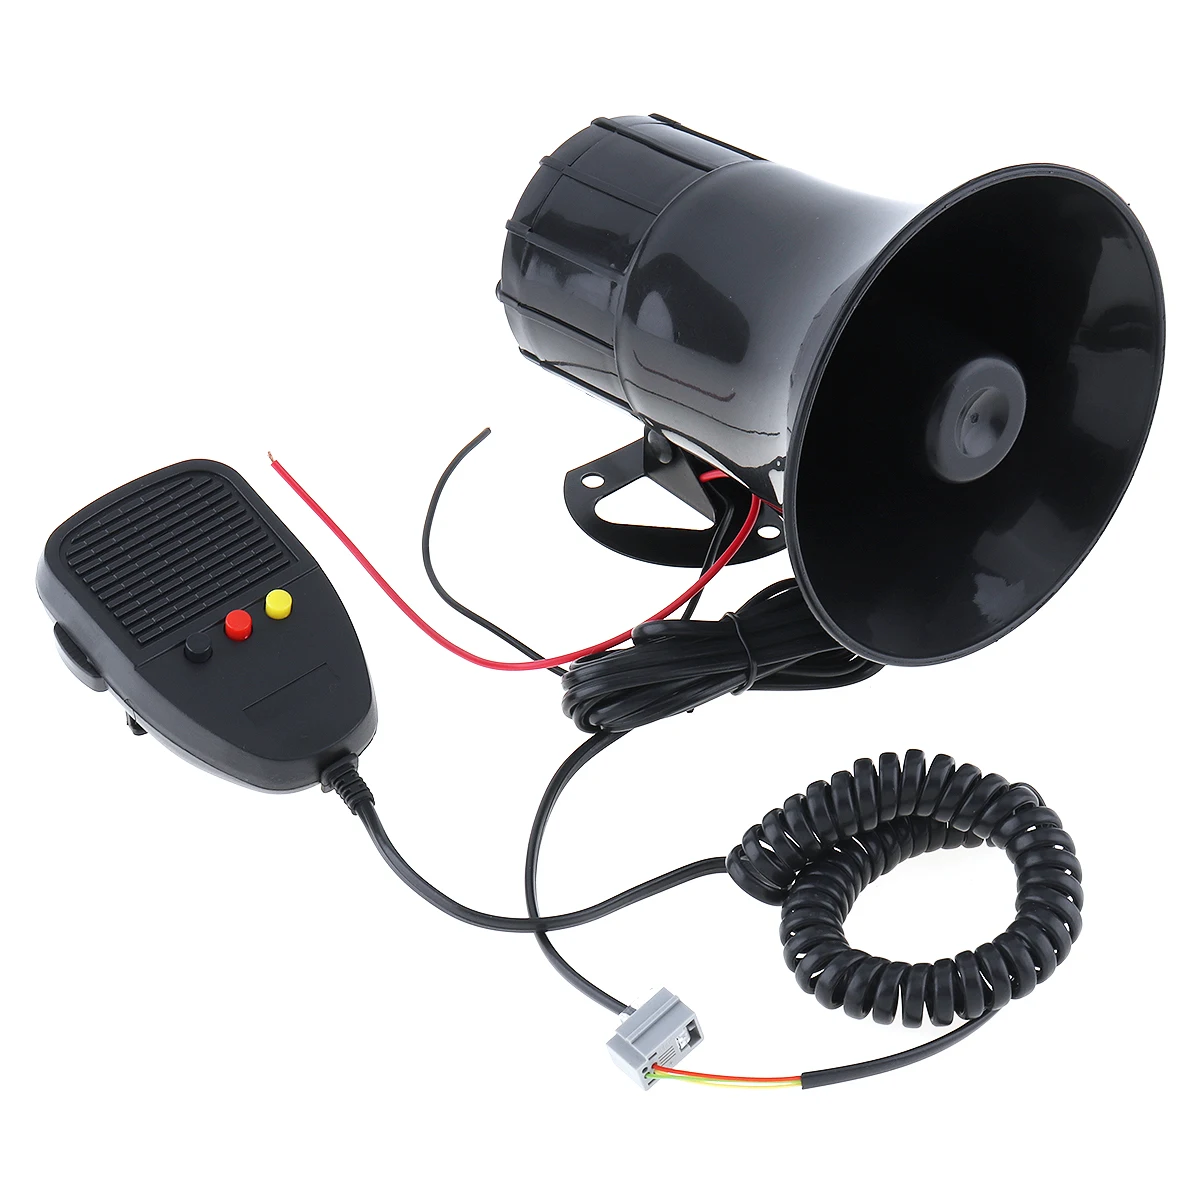 12V 100W 3 Звуки Автомобильный Электронный Предупреждение сирена мотоцикла сигнальные гудки пожарных громкоговоритель скорой помощи голосовые подсказки с микрофоном Bluetooth для автомобилей